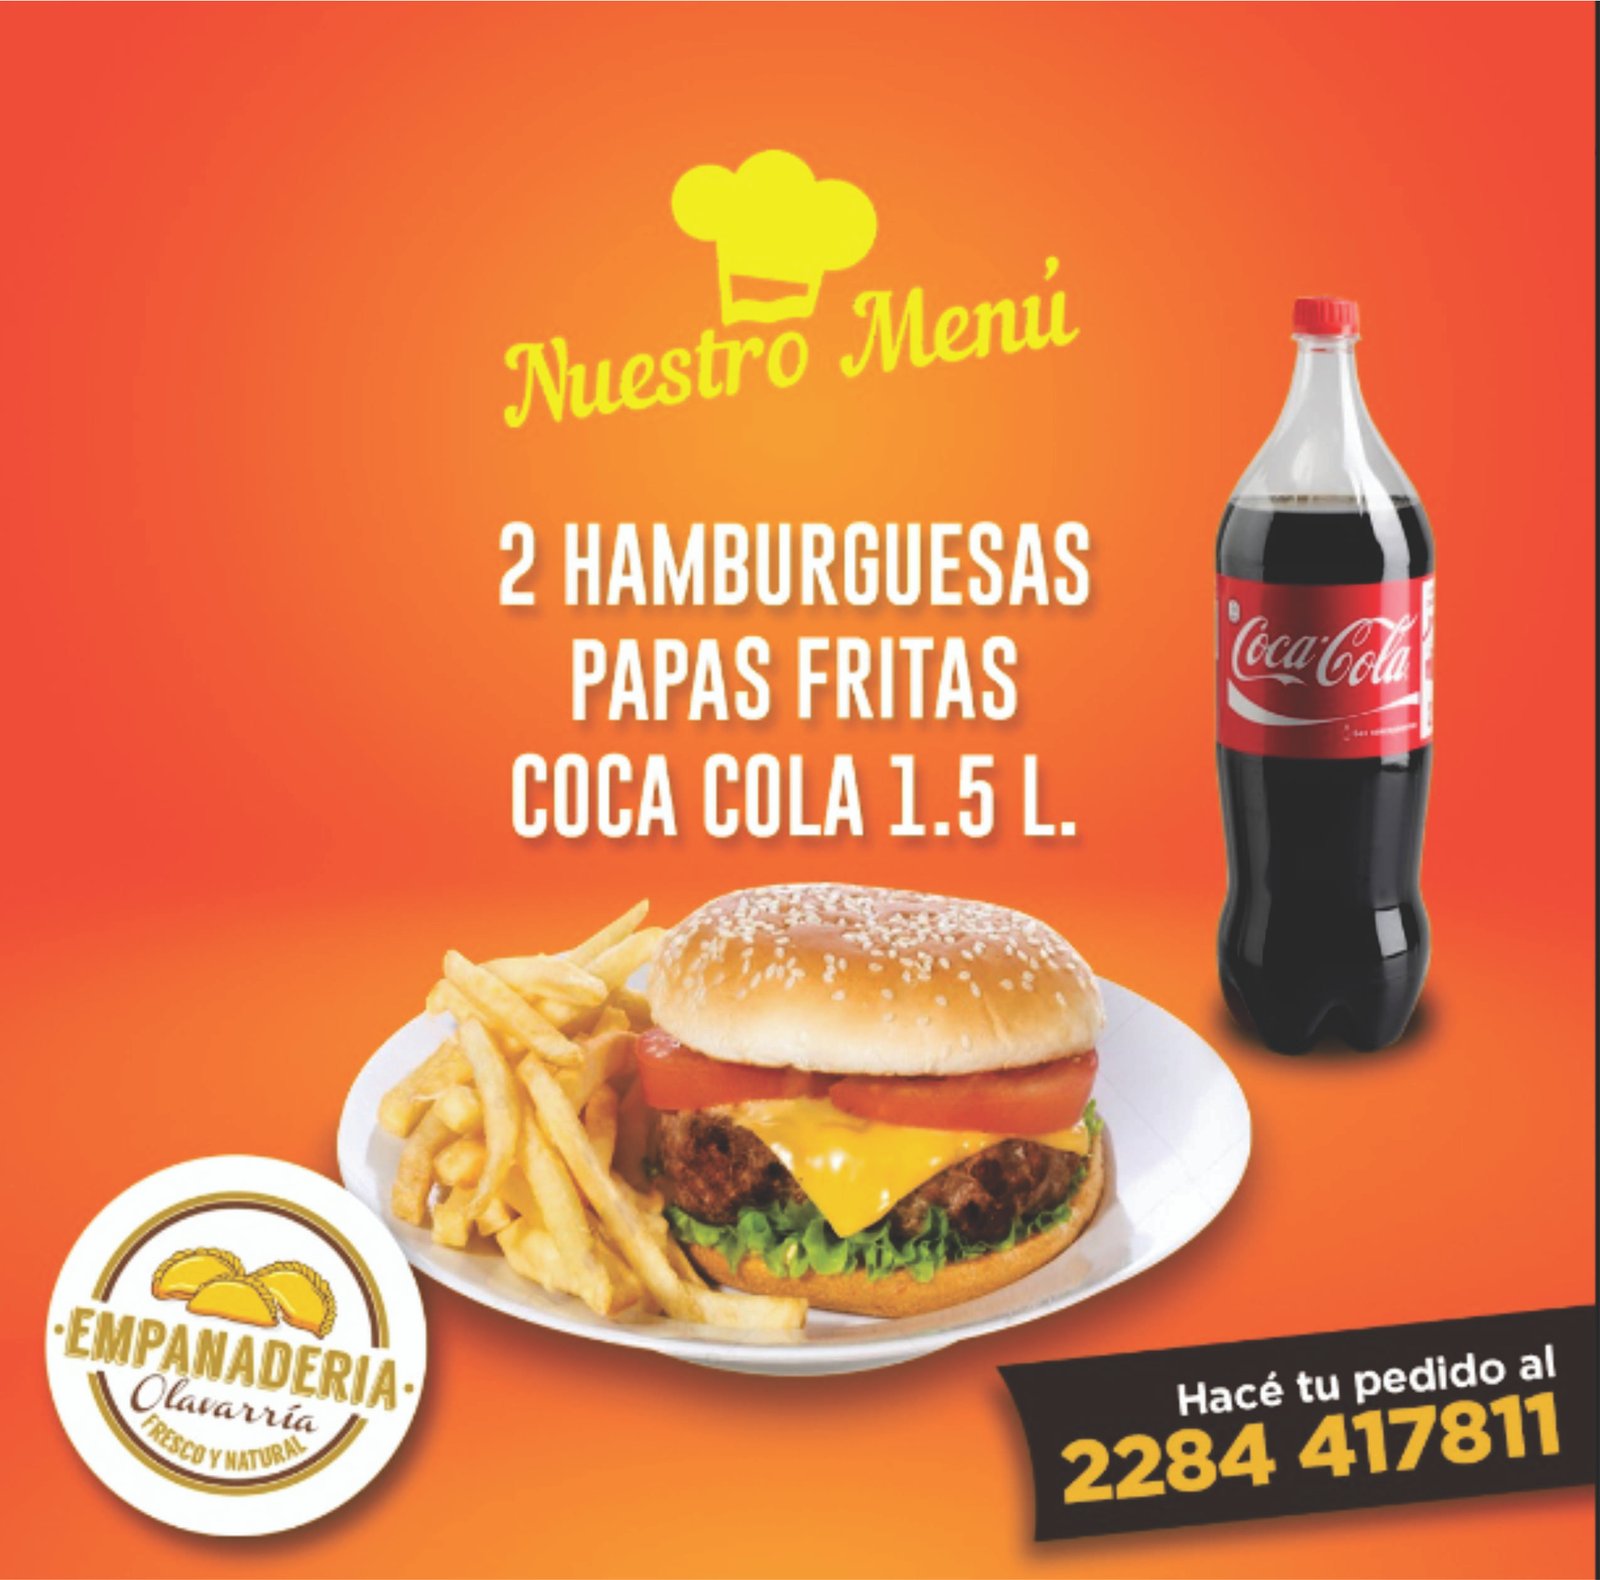 2 Hamburguesas + Fritas + Coca Cola 1.5L